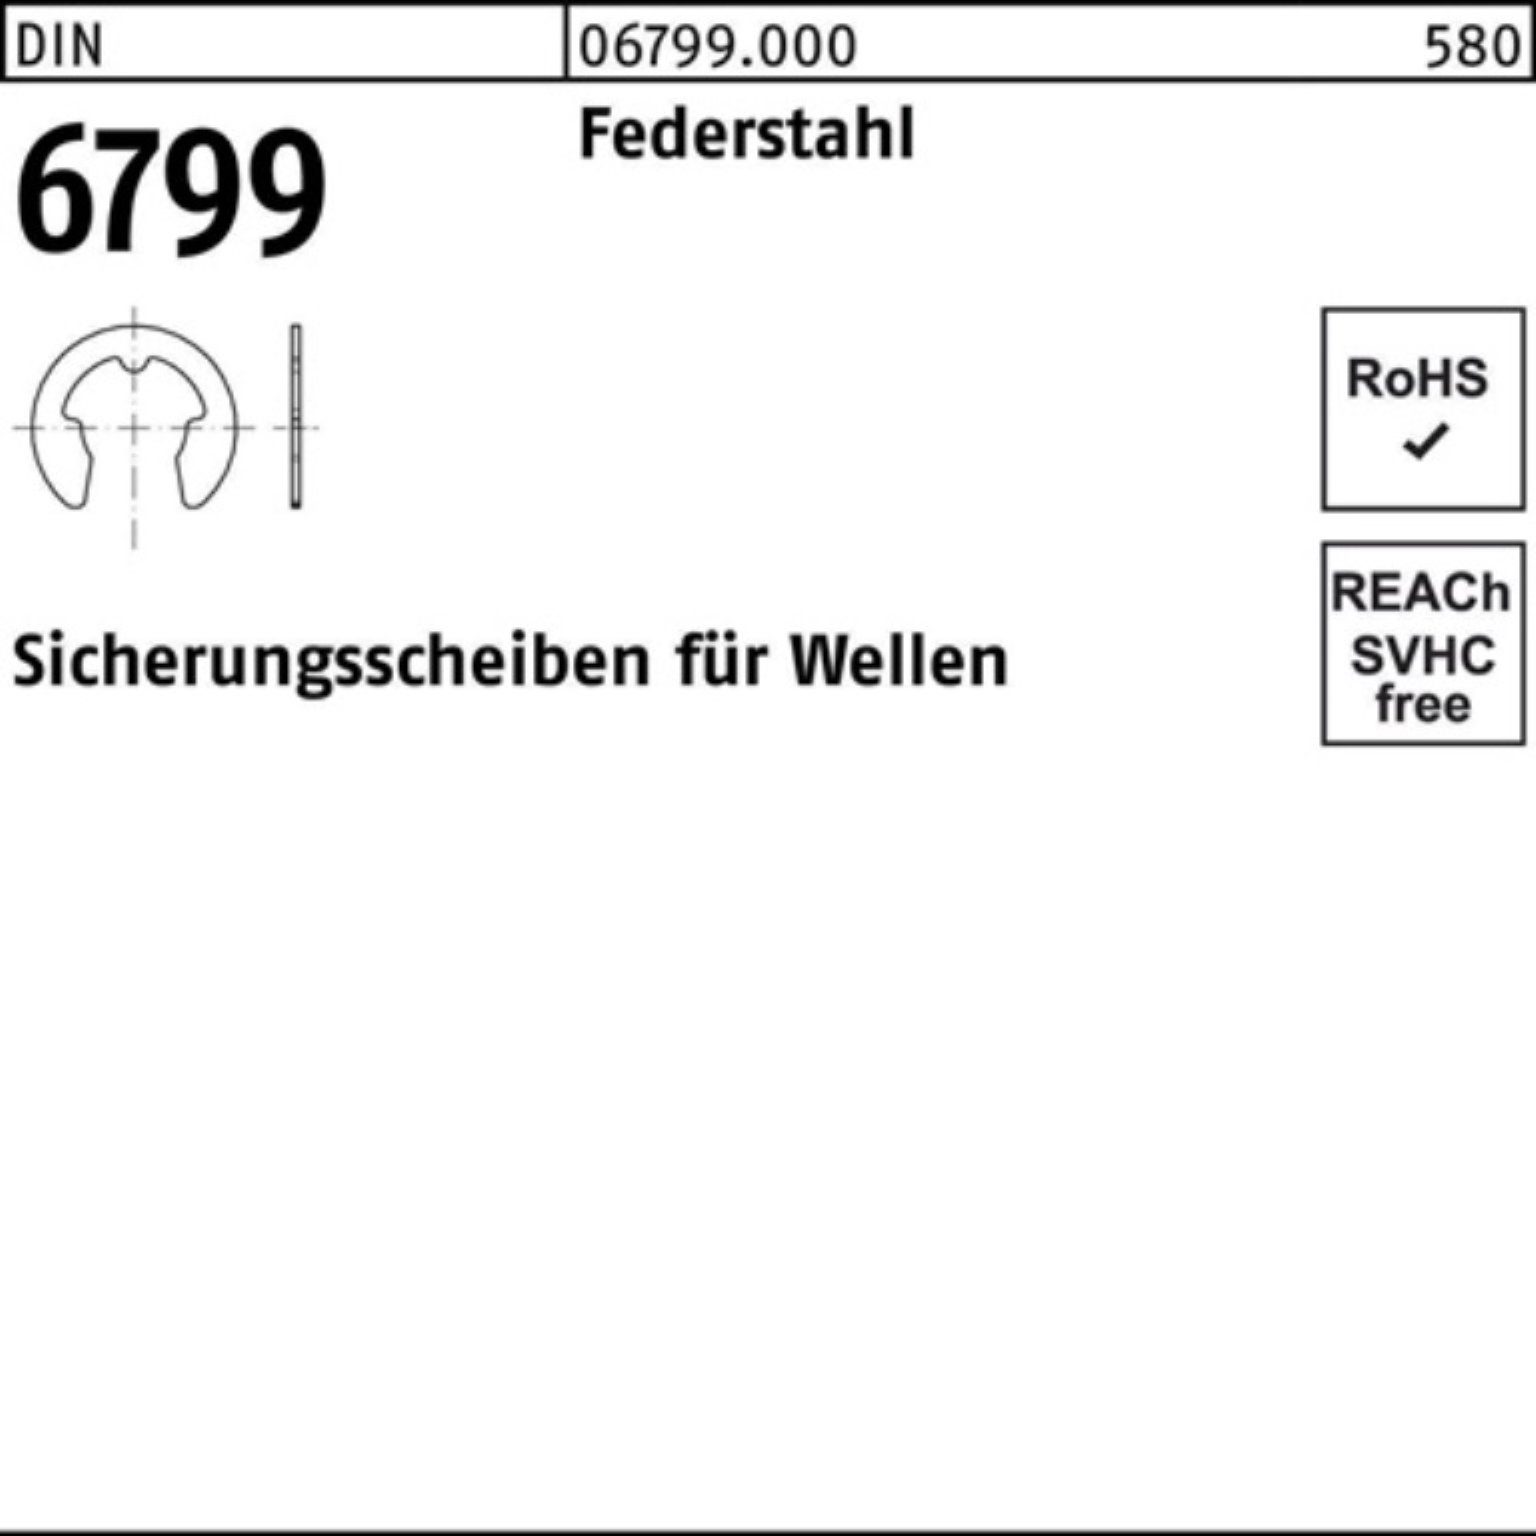 Reyher Sicherungsscheibe 500er Stü f.Wellen DIN Pack Sicherungsscheibe Federstahl 500 6799 1,2